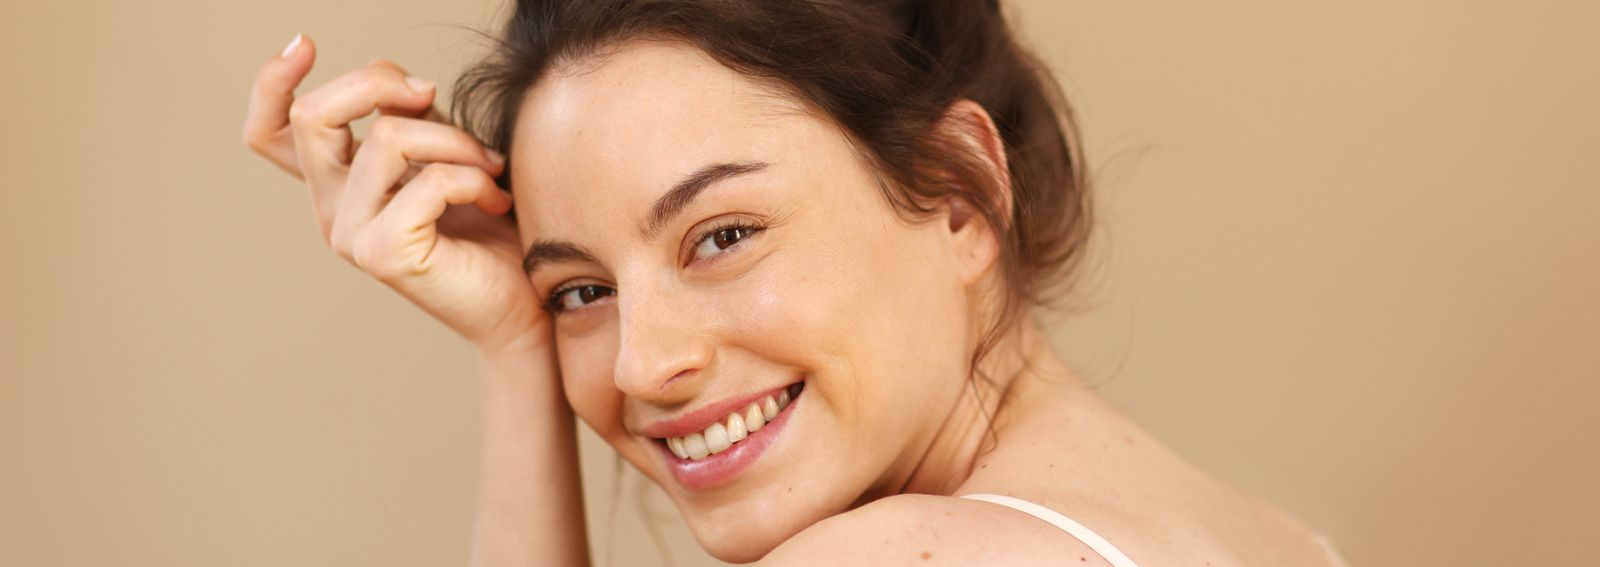 Skincare para pele oleosa: as melhores dicas para sua rotina